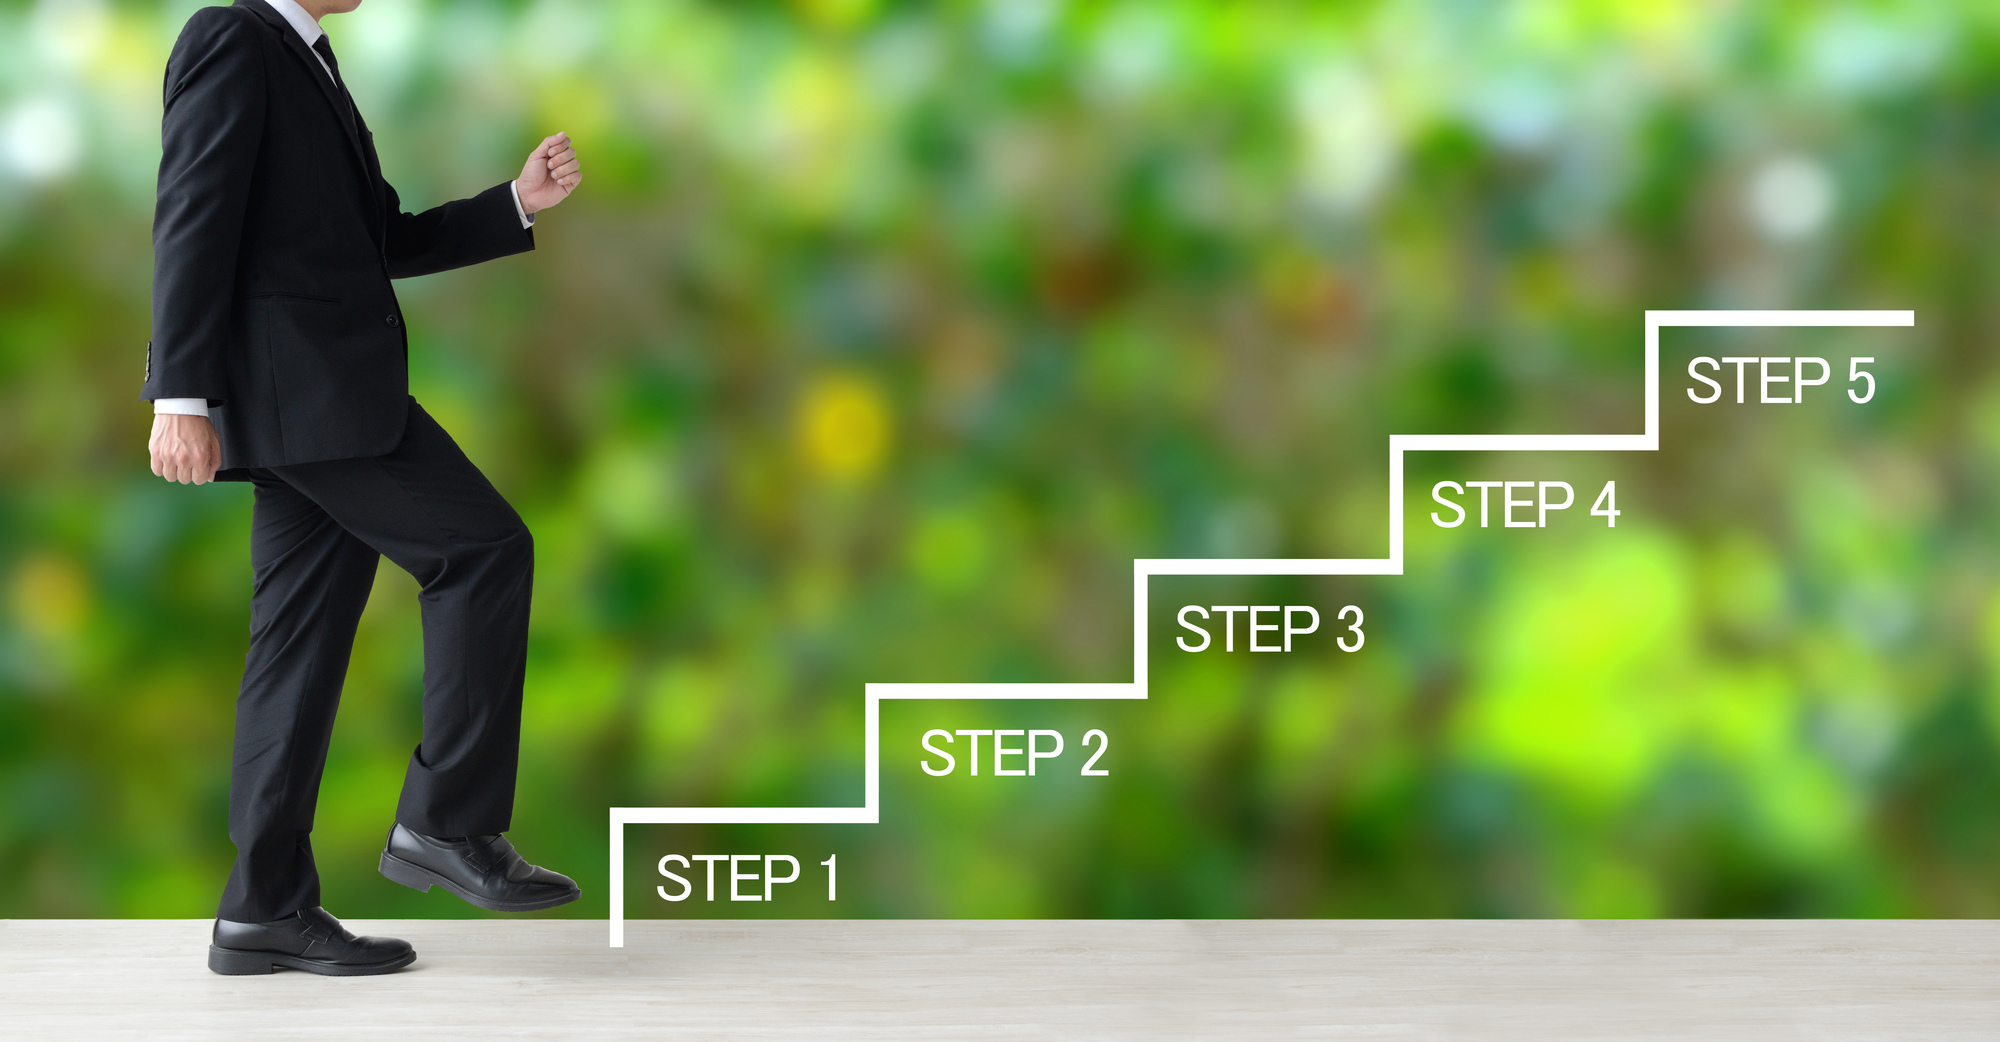 ビジネスにおける5段階のステップをイメージした図